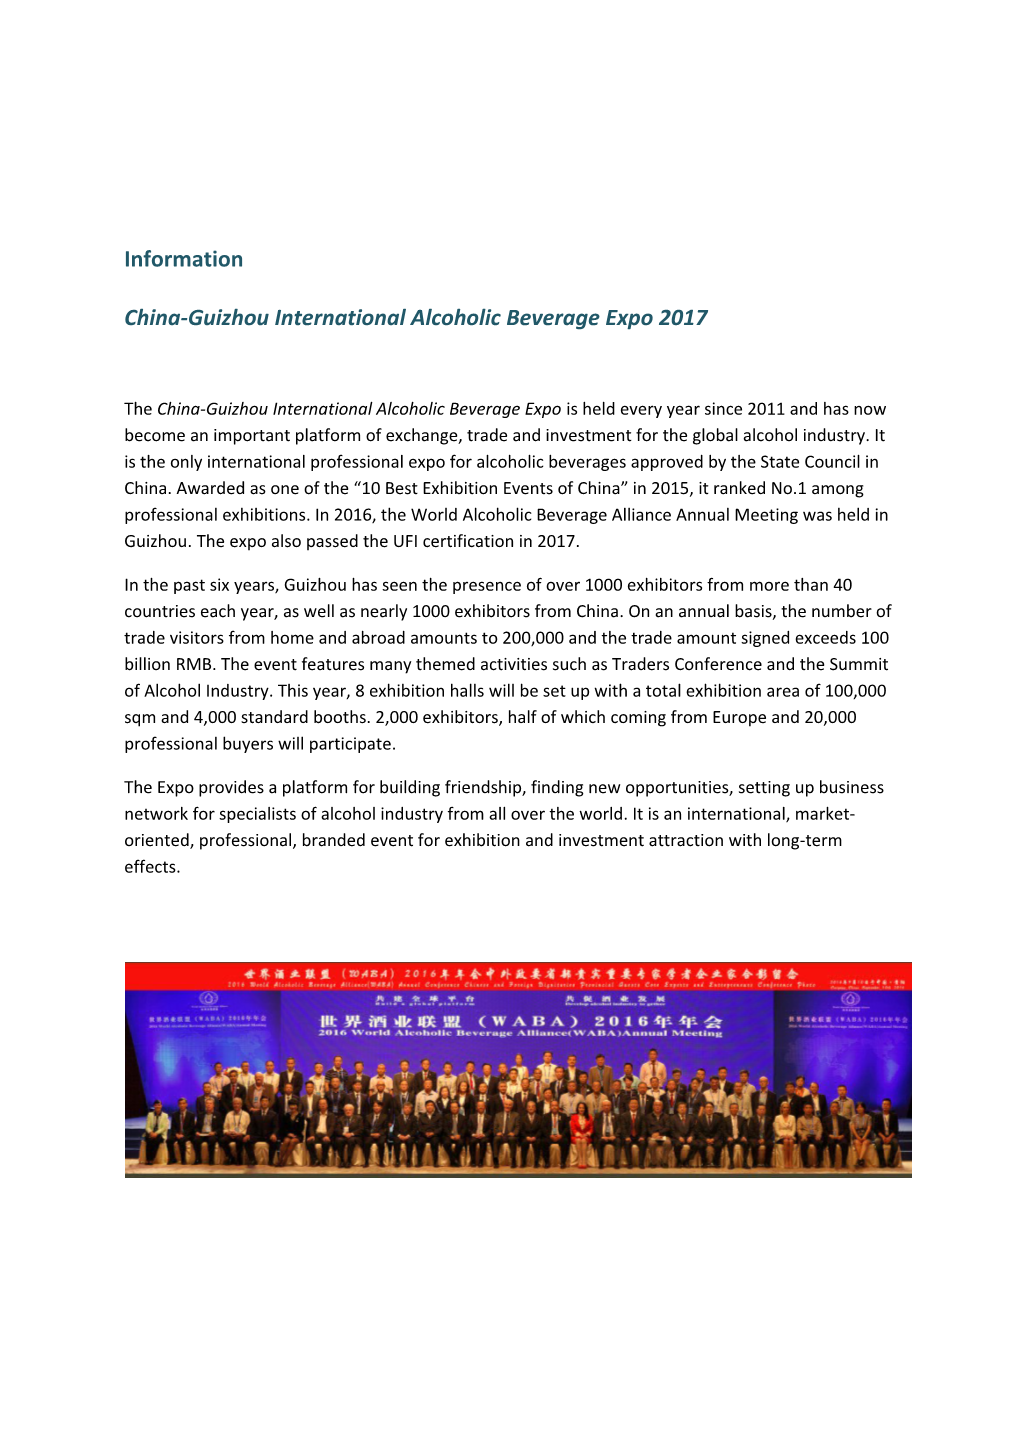 China-Guizhou International Alcoholic Beverage Expo 2017